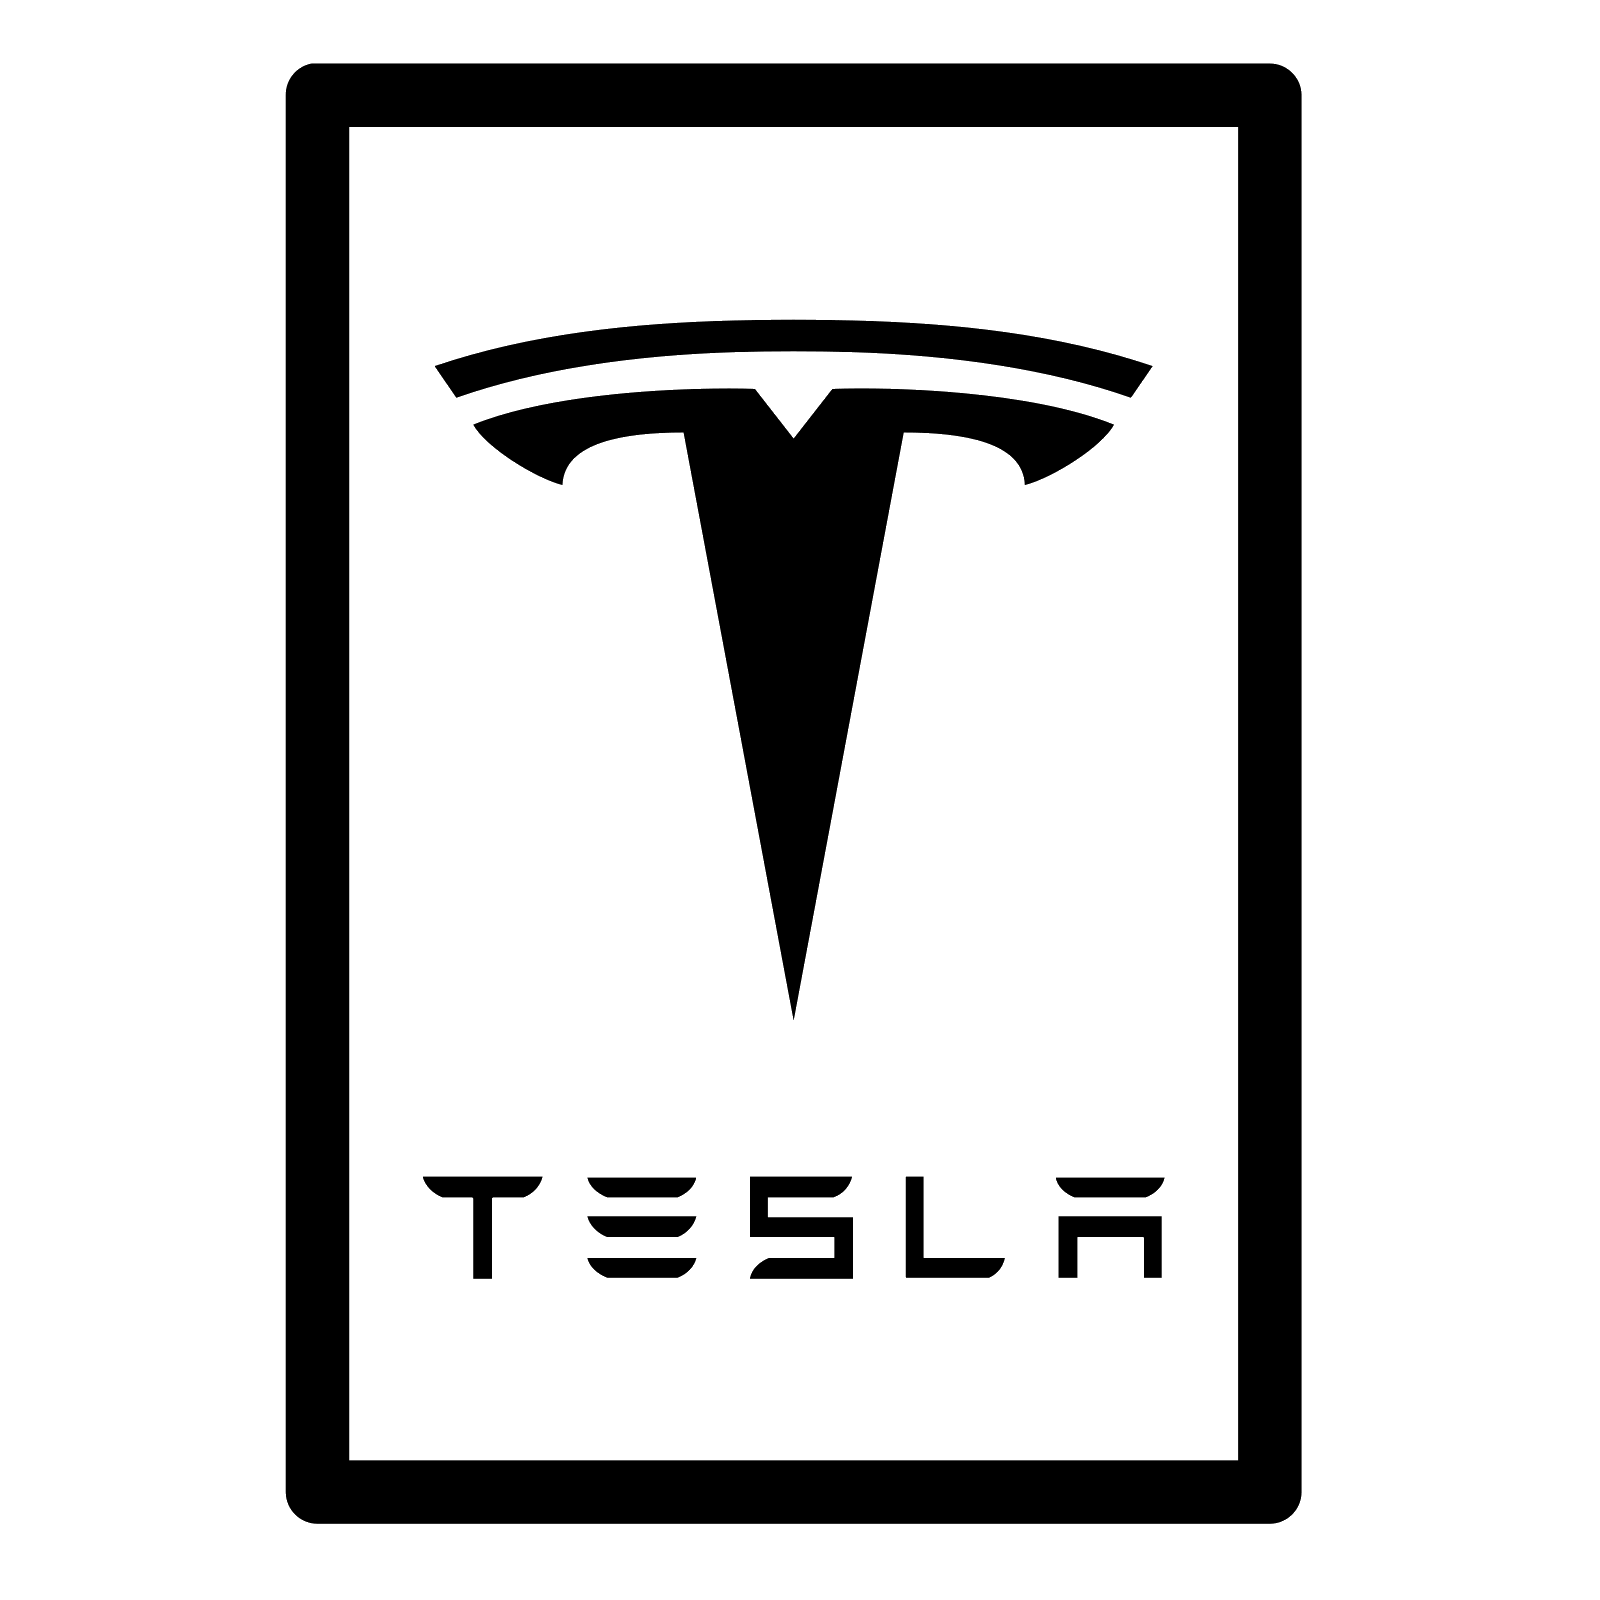 Logo Tesli